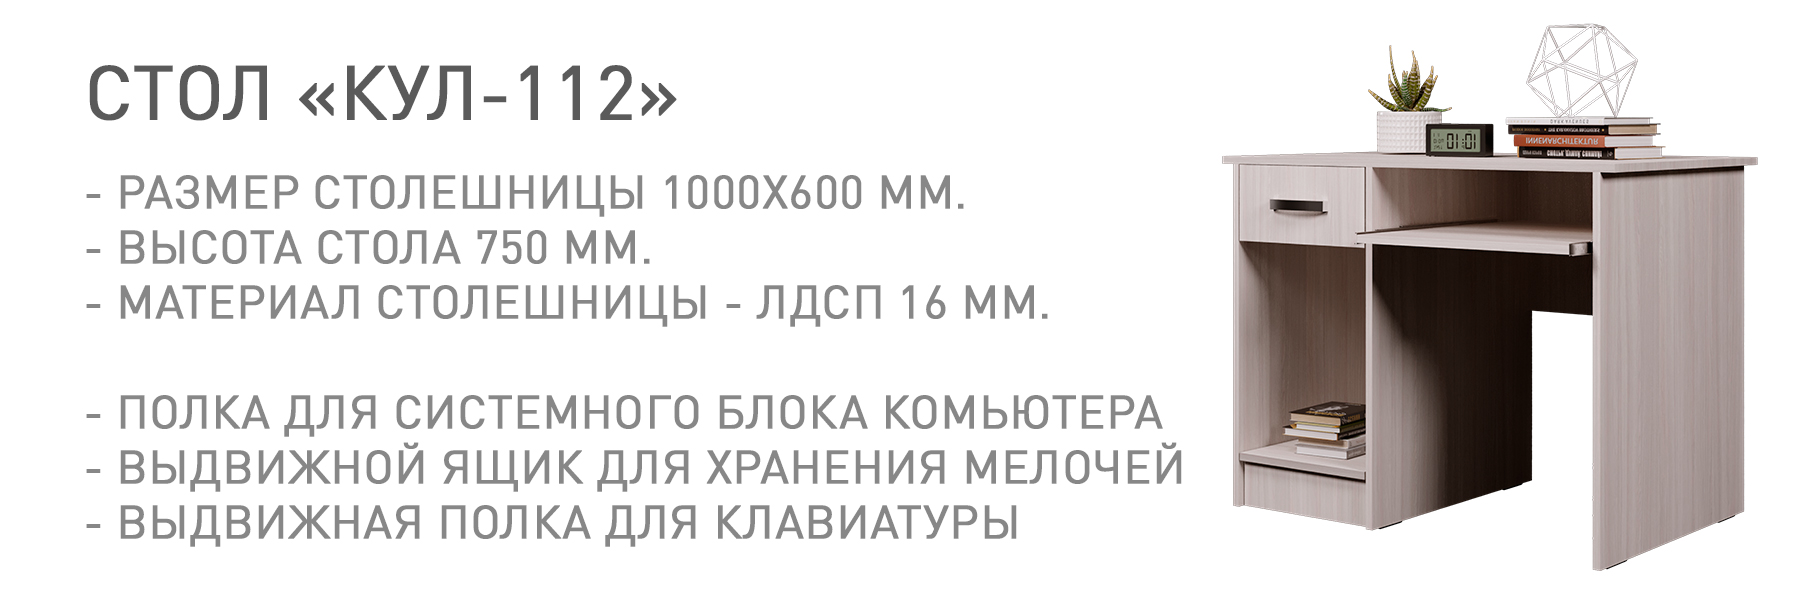 КУЛ-112-КУЛ-00077.jpg